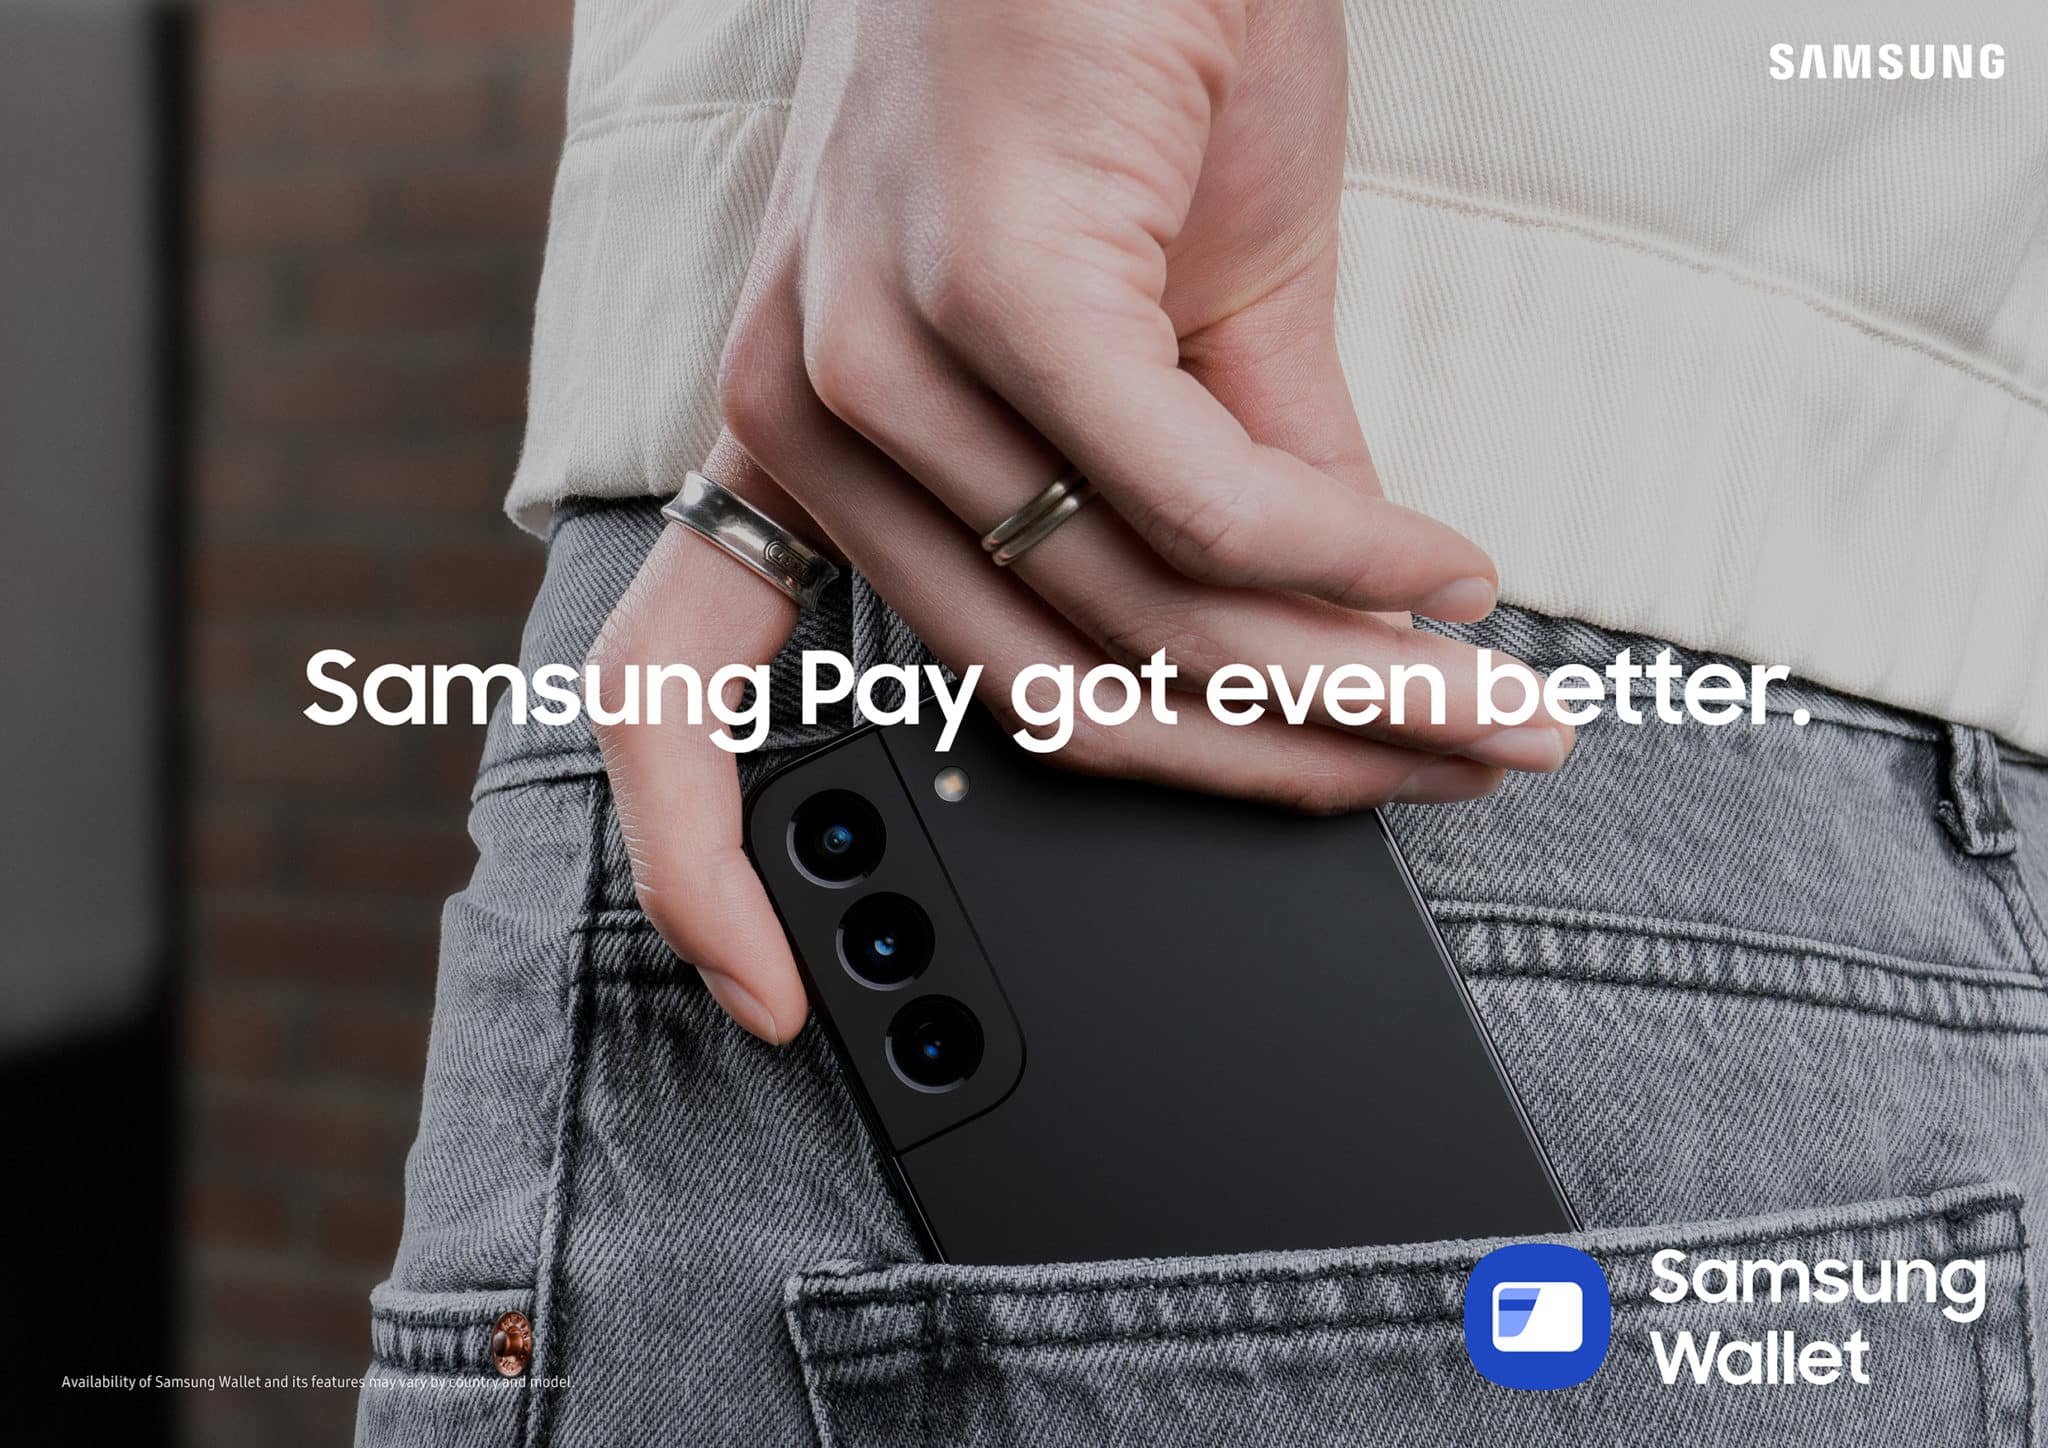 Samsung Wallet Handy in Hosentasche